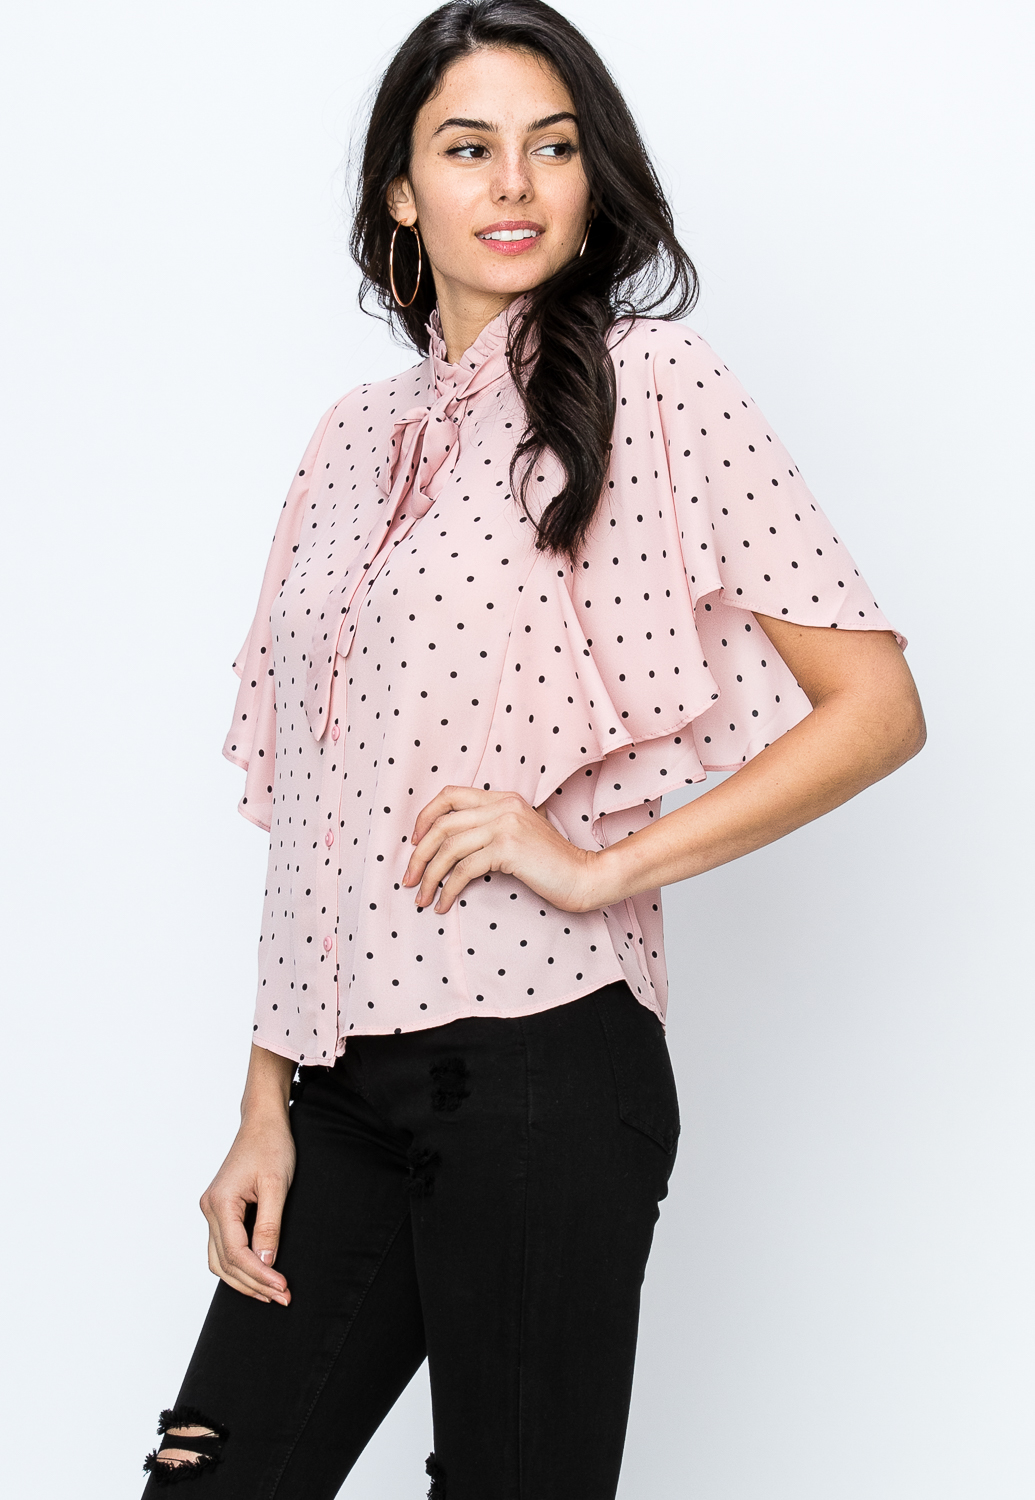 Polka Dot Button Up Dressy Top | Shop Blouses & Shirts at Papaya Clothing